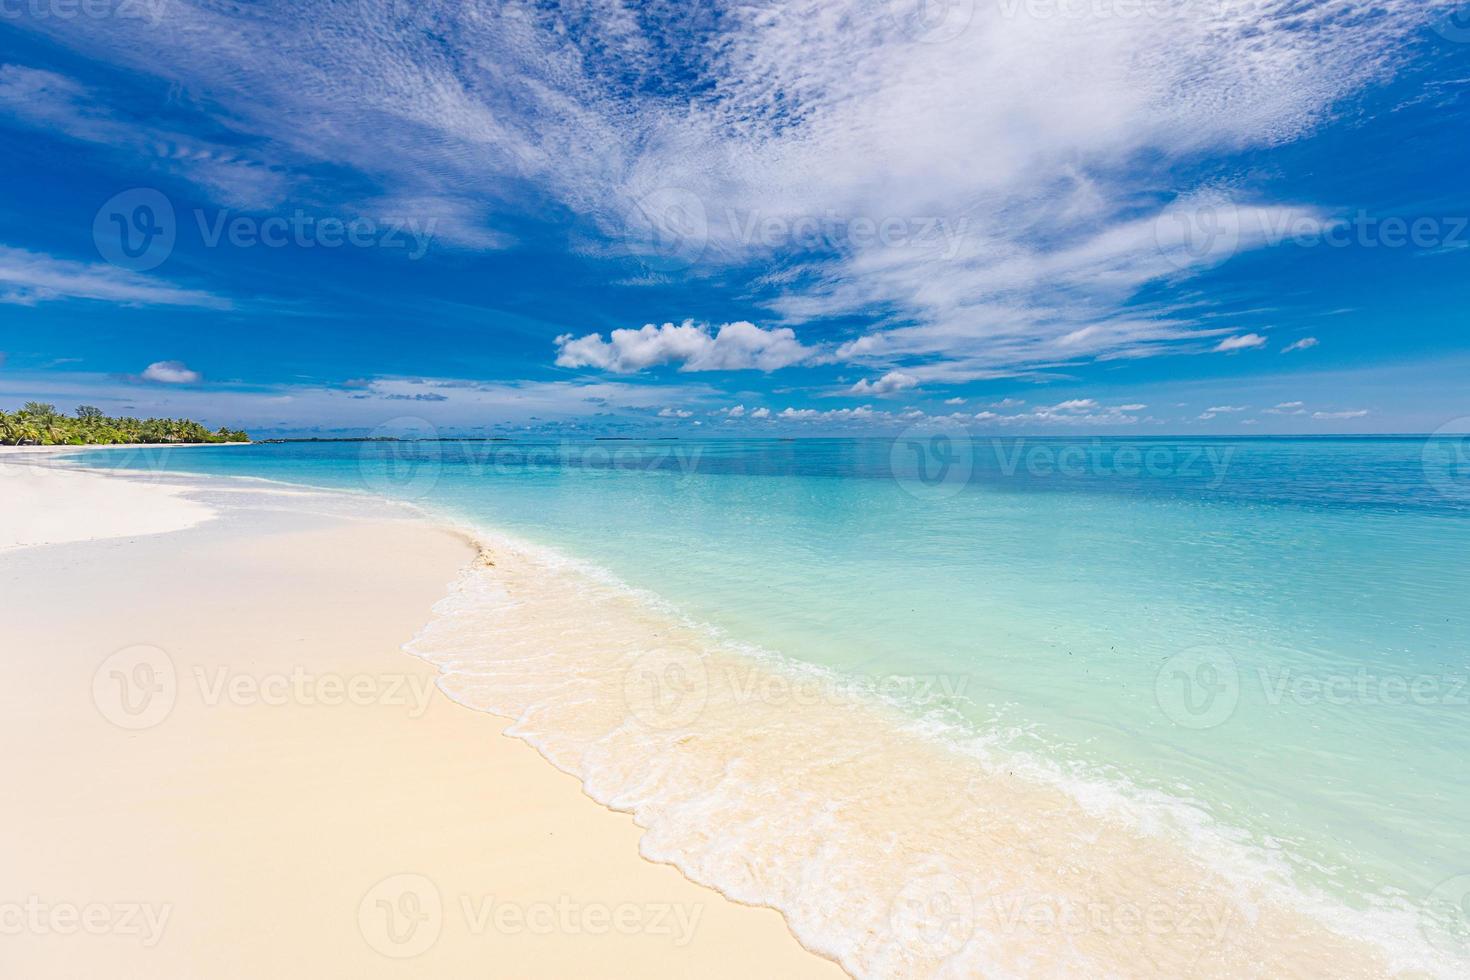 tropicale Paradiso spiaggia con bianca sabbia e blu mare acqua viaggio turismo largo panorama sfondo concetto. idilliaco spiaggia paesaggio, morbido onde, tranquillo, calmo natura scenario. meraviglioso isola costa, rilassare foto